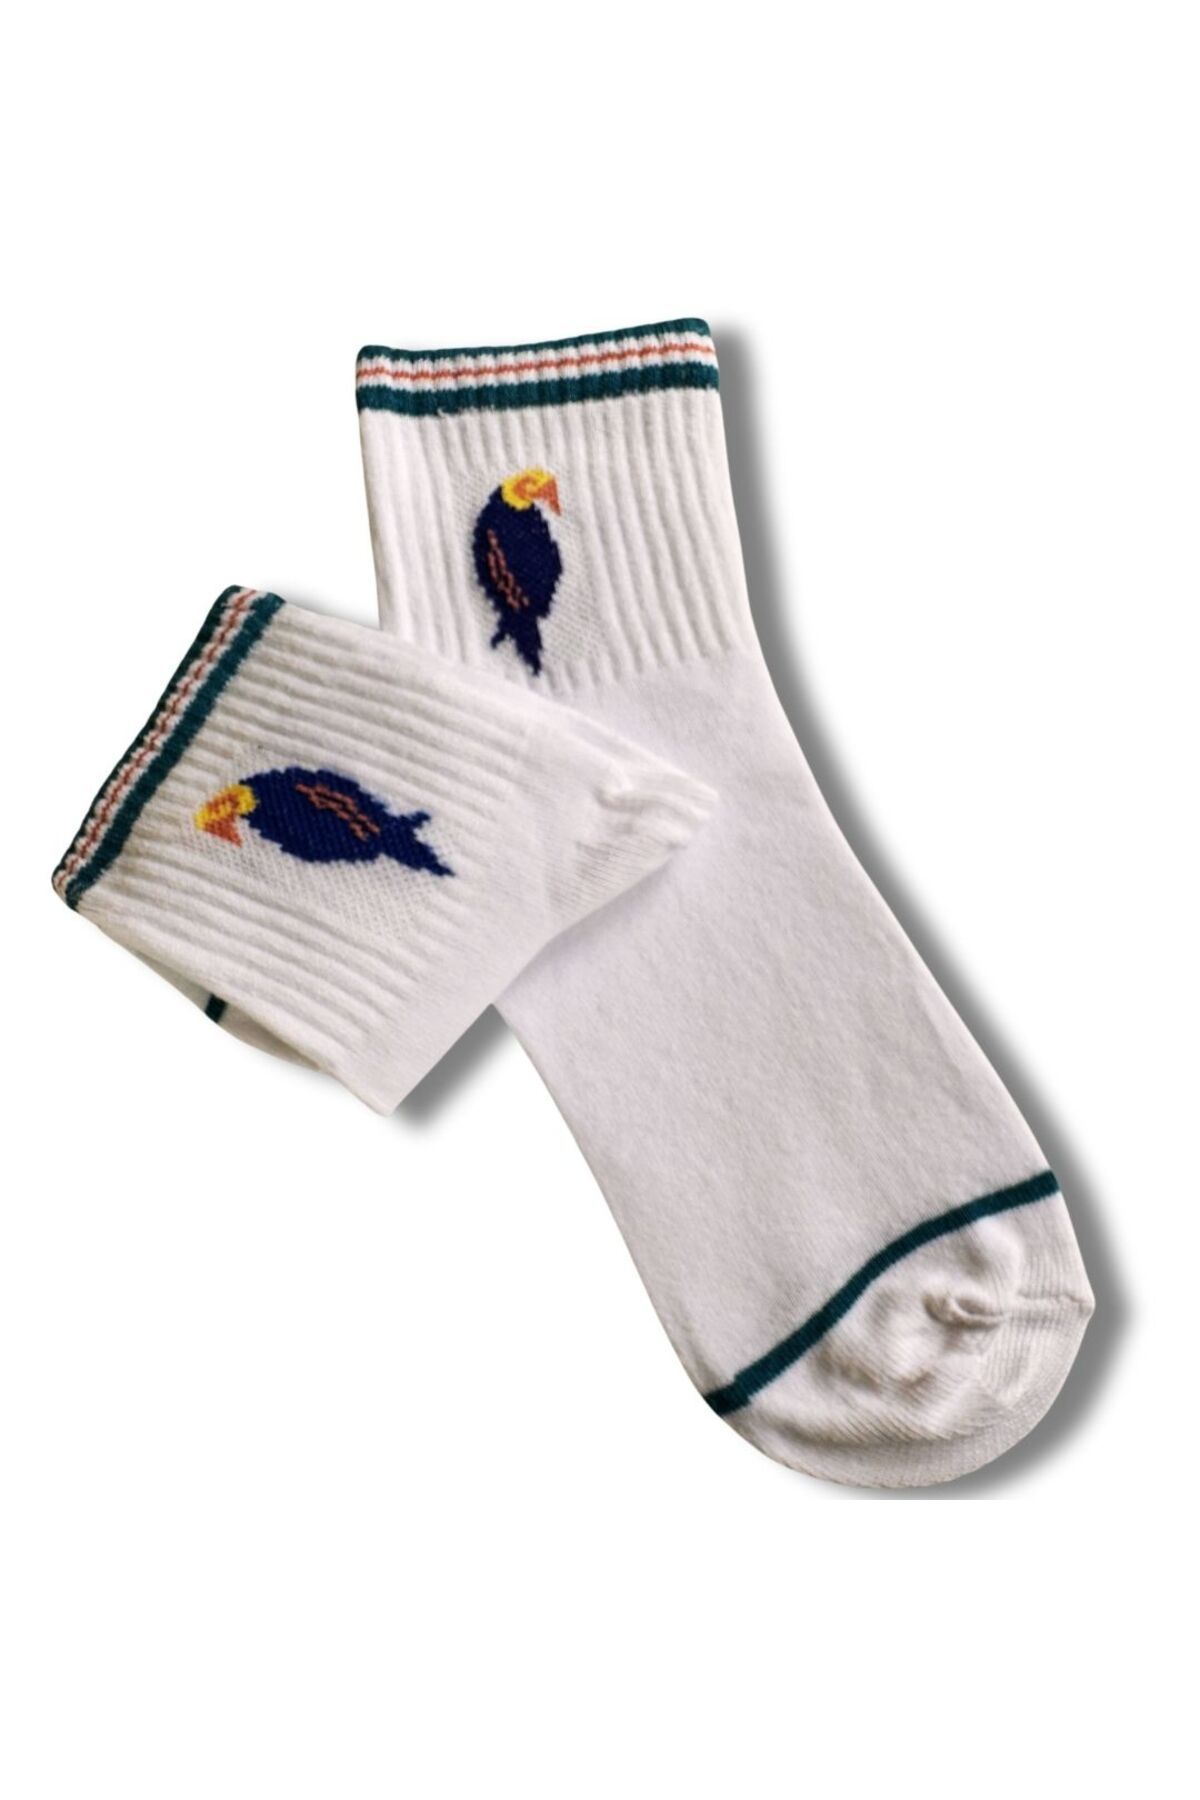 anonim Özel Kuş Serisi : Mavi Papağan Baskılı Unisex Soket Çorap